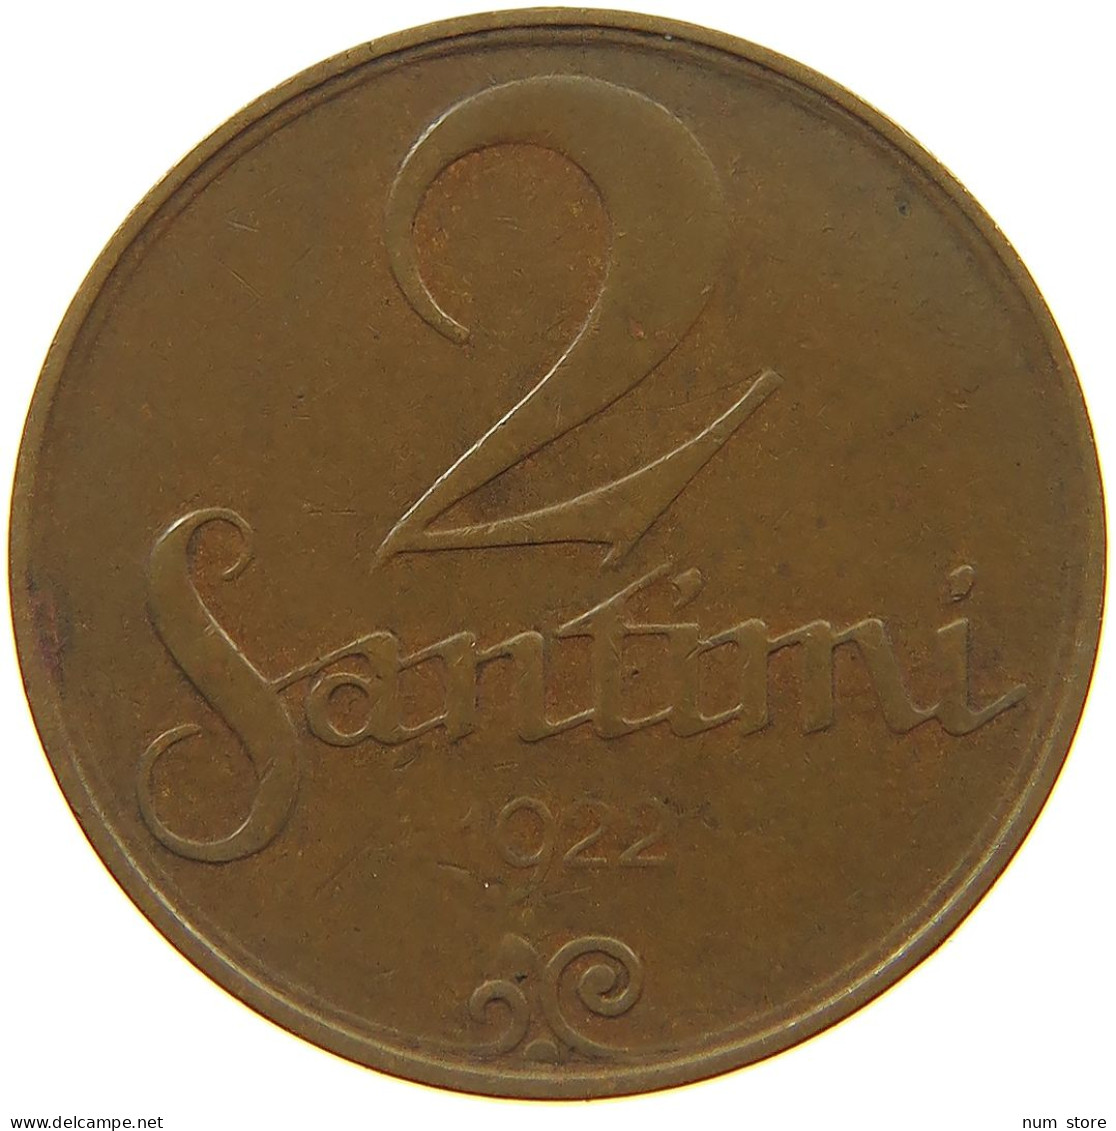 LATVIA 2 SANTIMI 1922  #c083 0413 - Latvia